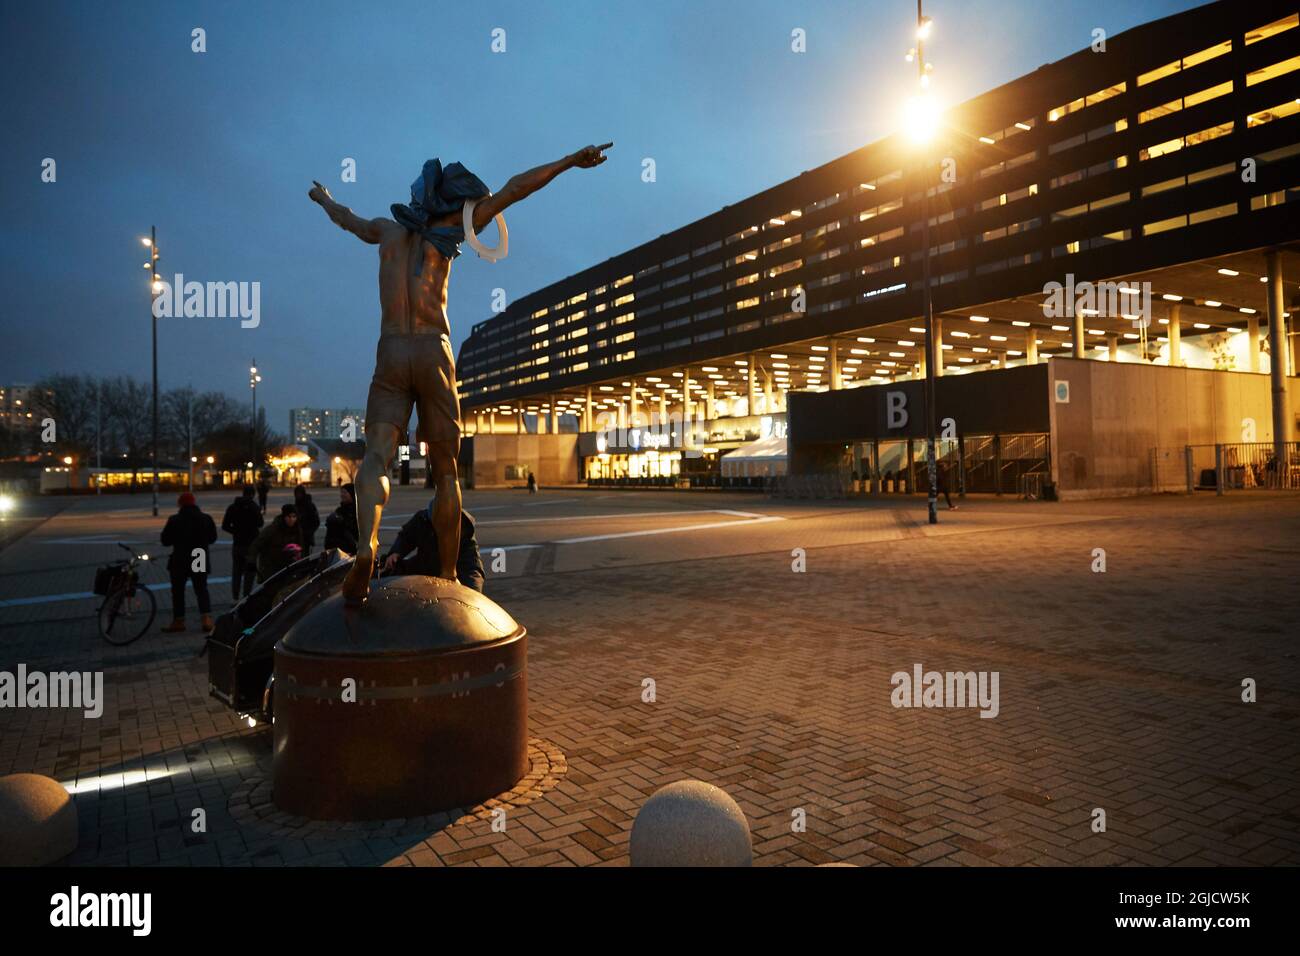 La statue du footballeur suédois Zlatan Ibrahimovic à l'extérieur du stade de football de Malmo, en Suède, a été vandalisée. Certains supporters de l'ancien club de football de Zlatan Malmo FF sont en colère alors que Zlatan est devenu l'un des propriétaires du club de football de Stockholm Hammarby FF Foto: Andreas Hillergren / TT / Kod 10600 Banque D'Images